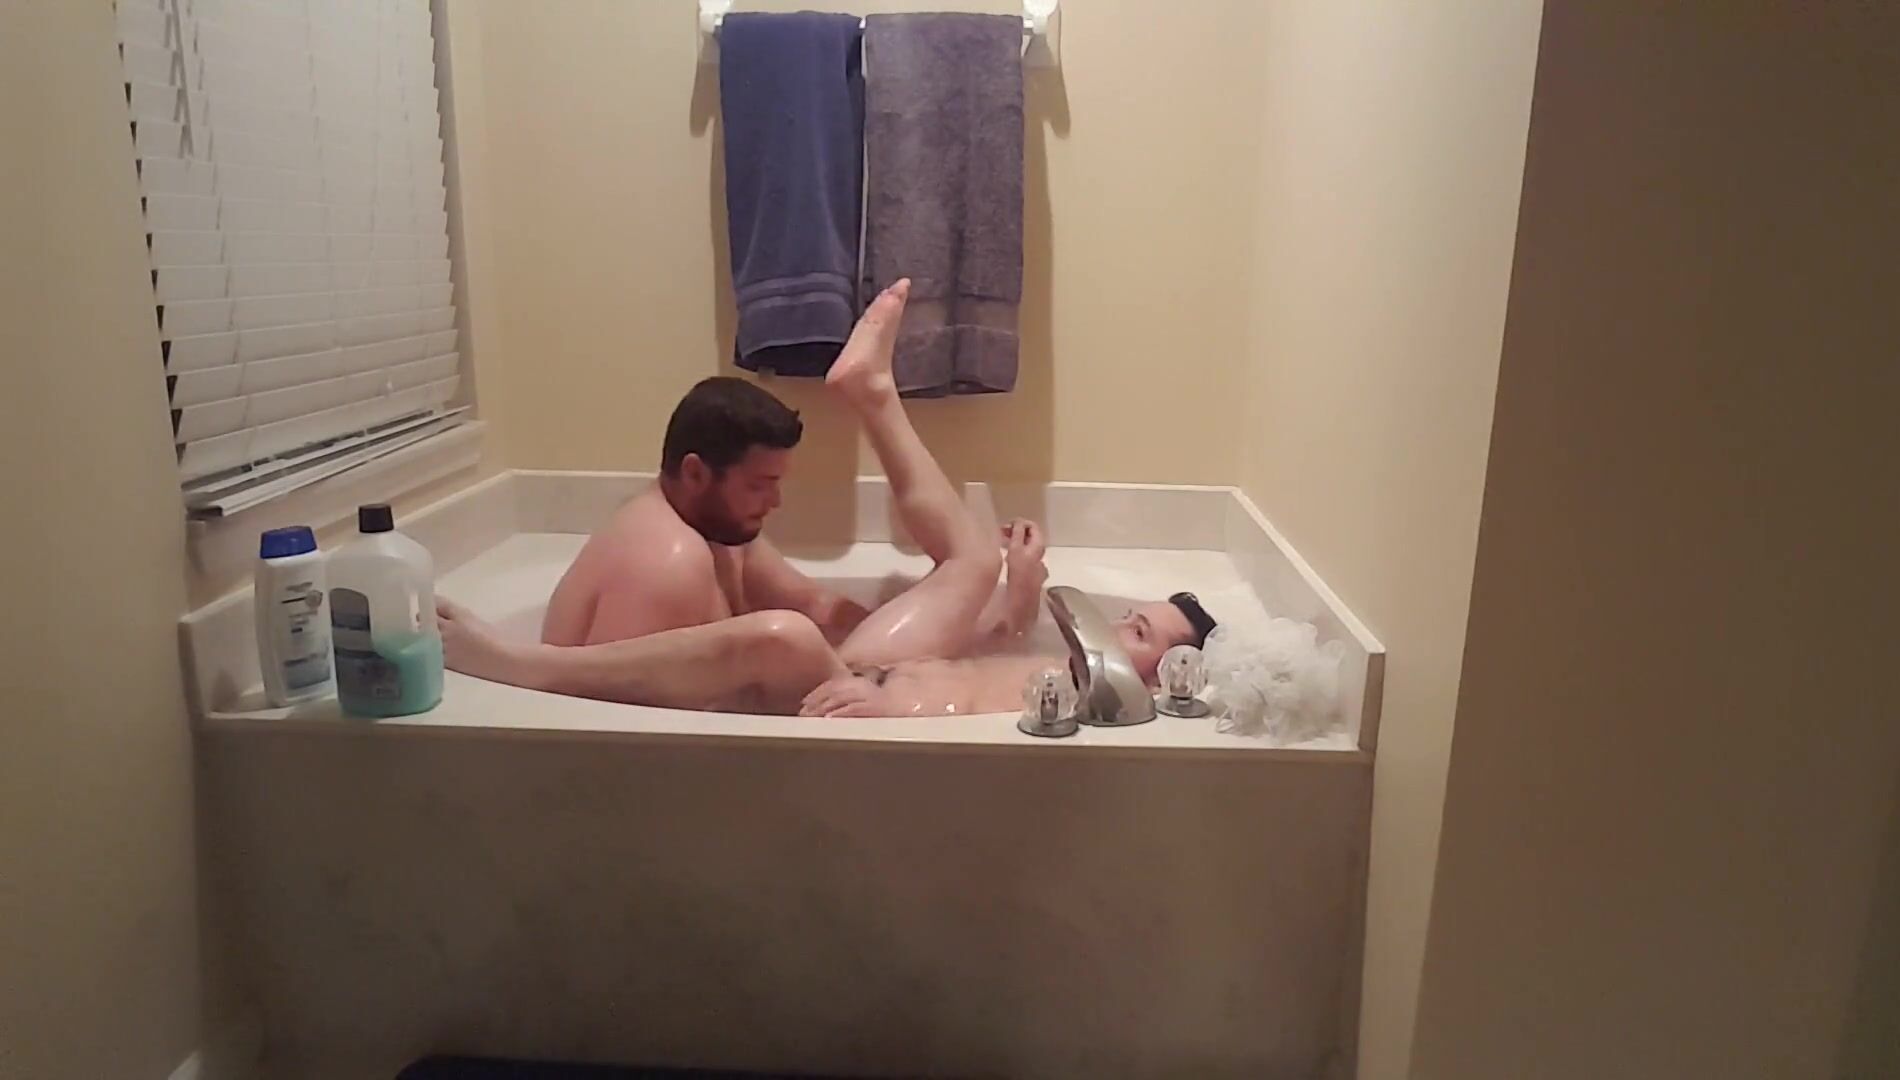 Noi facendo un bagno romantico guarda online Immagine